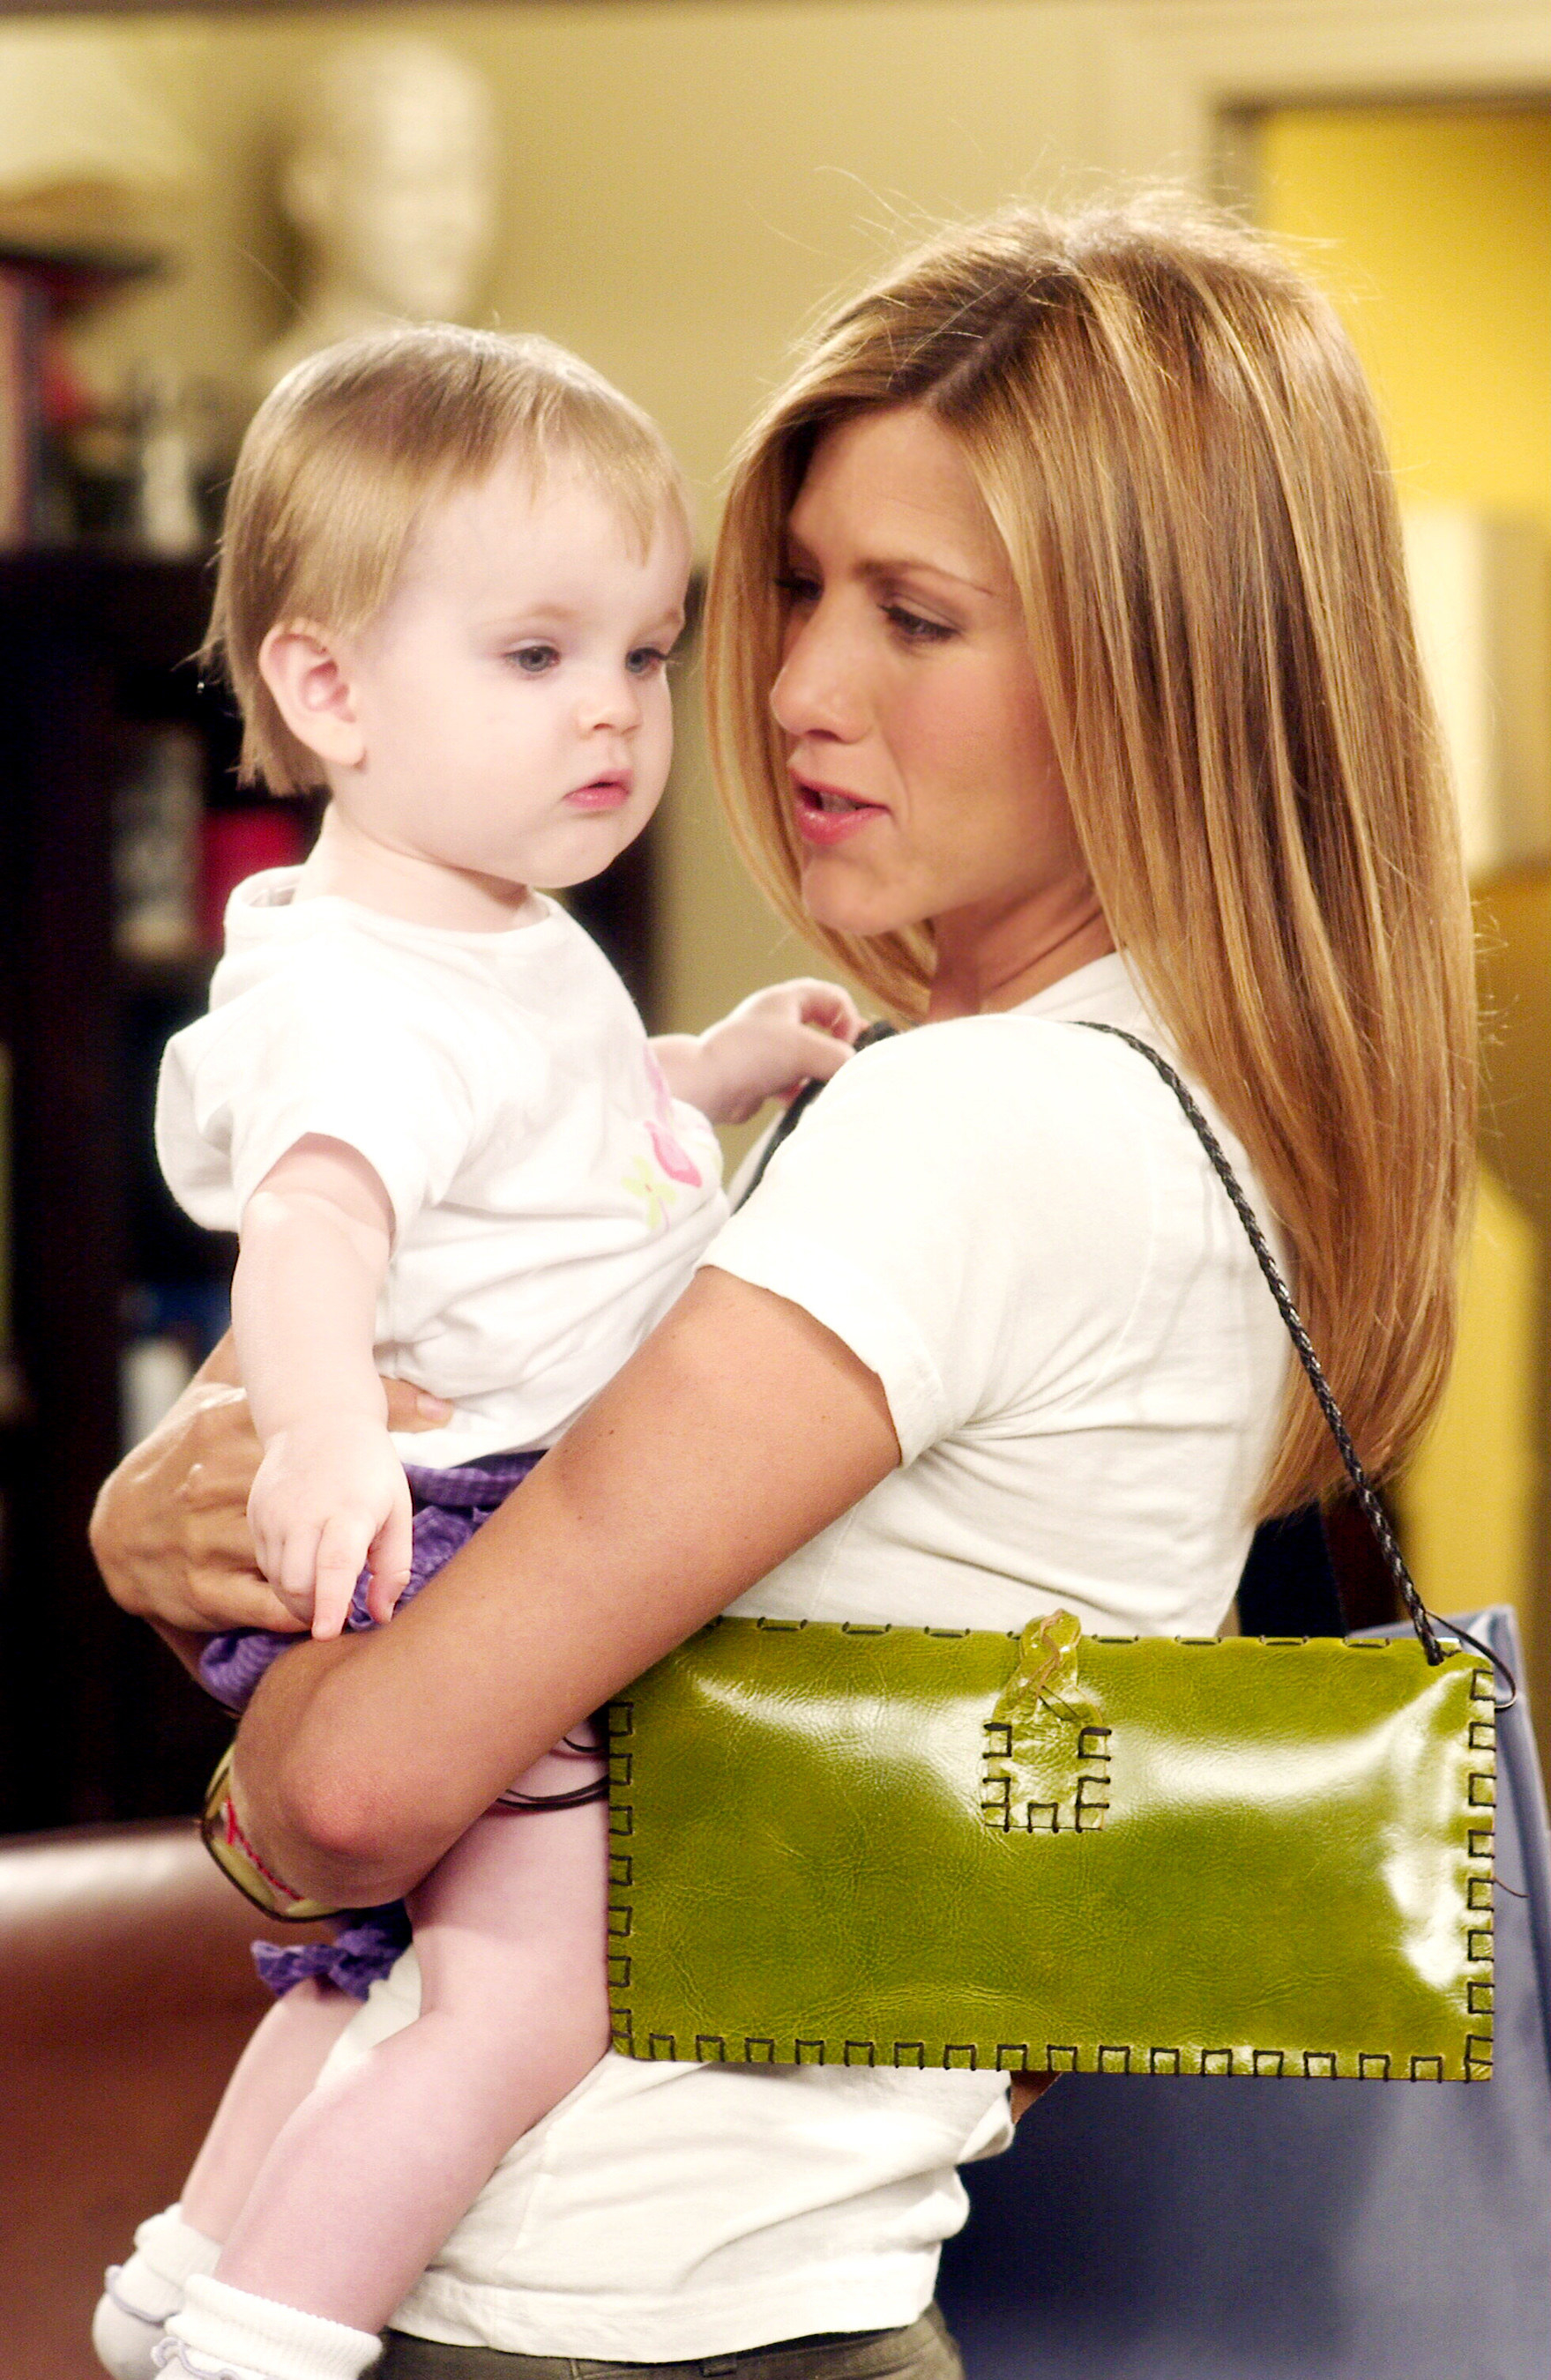 Rachel holding her baby Emma